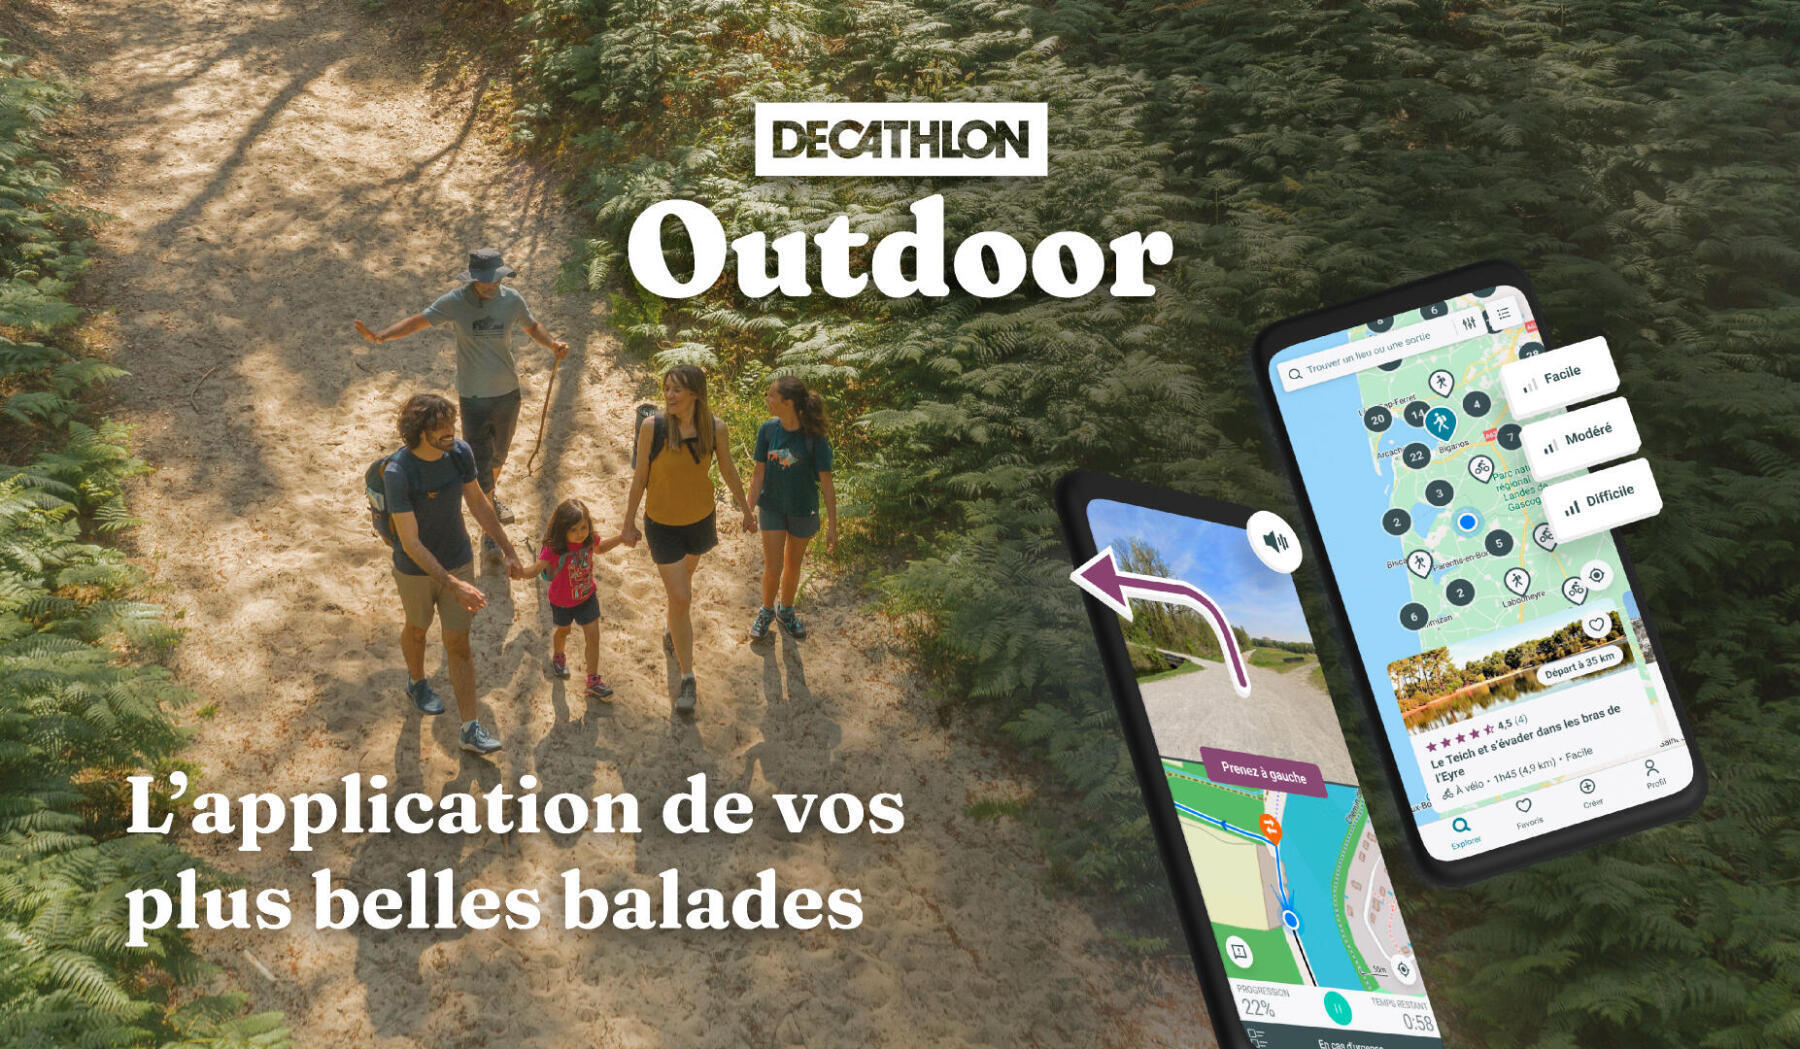 Images d'une famille en train de randonnée avec un téléphone à droite présentant l'application mobile Decathlon Outdoor